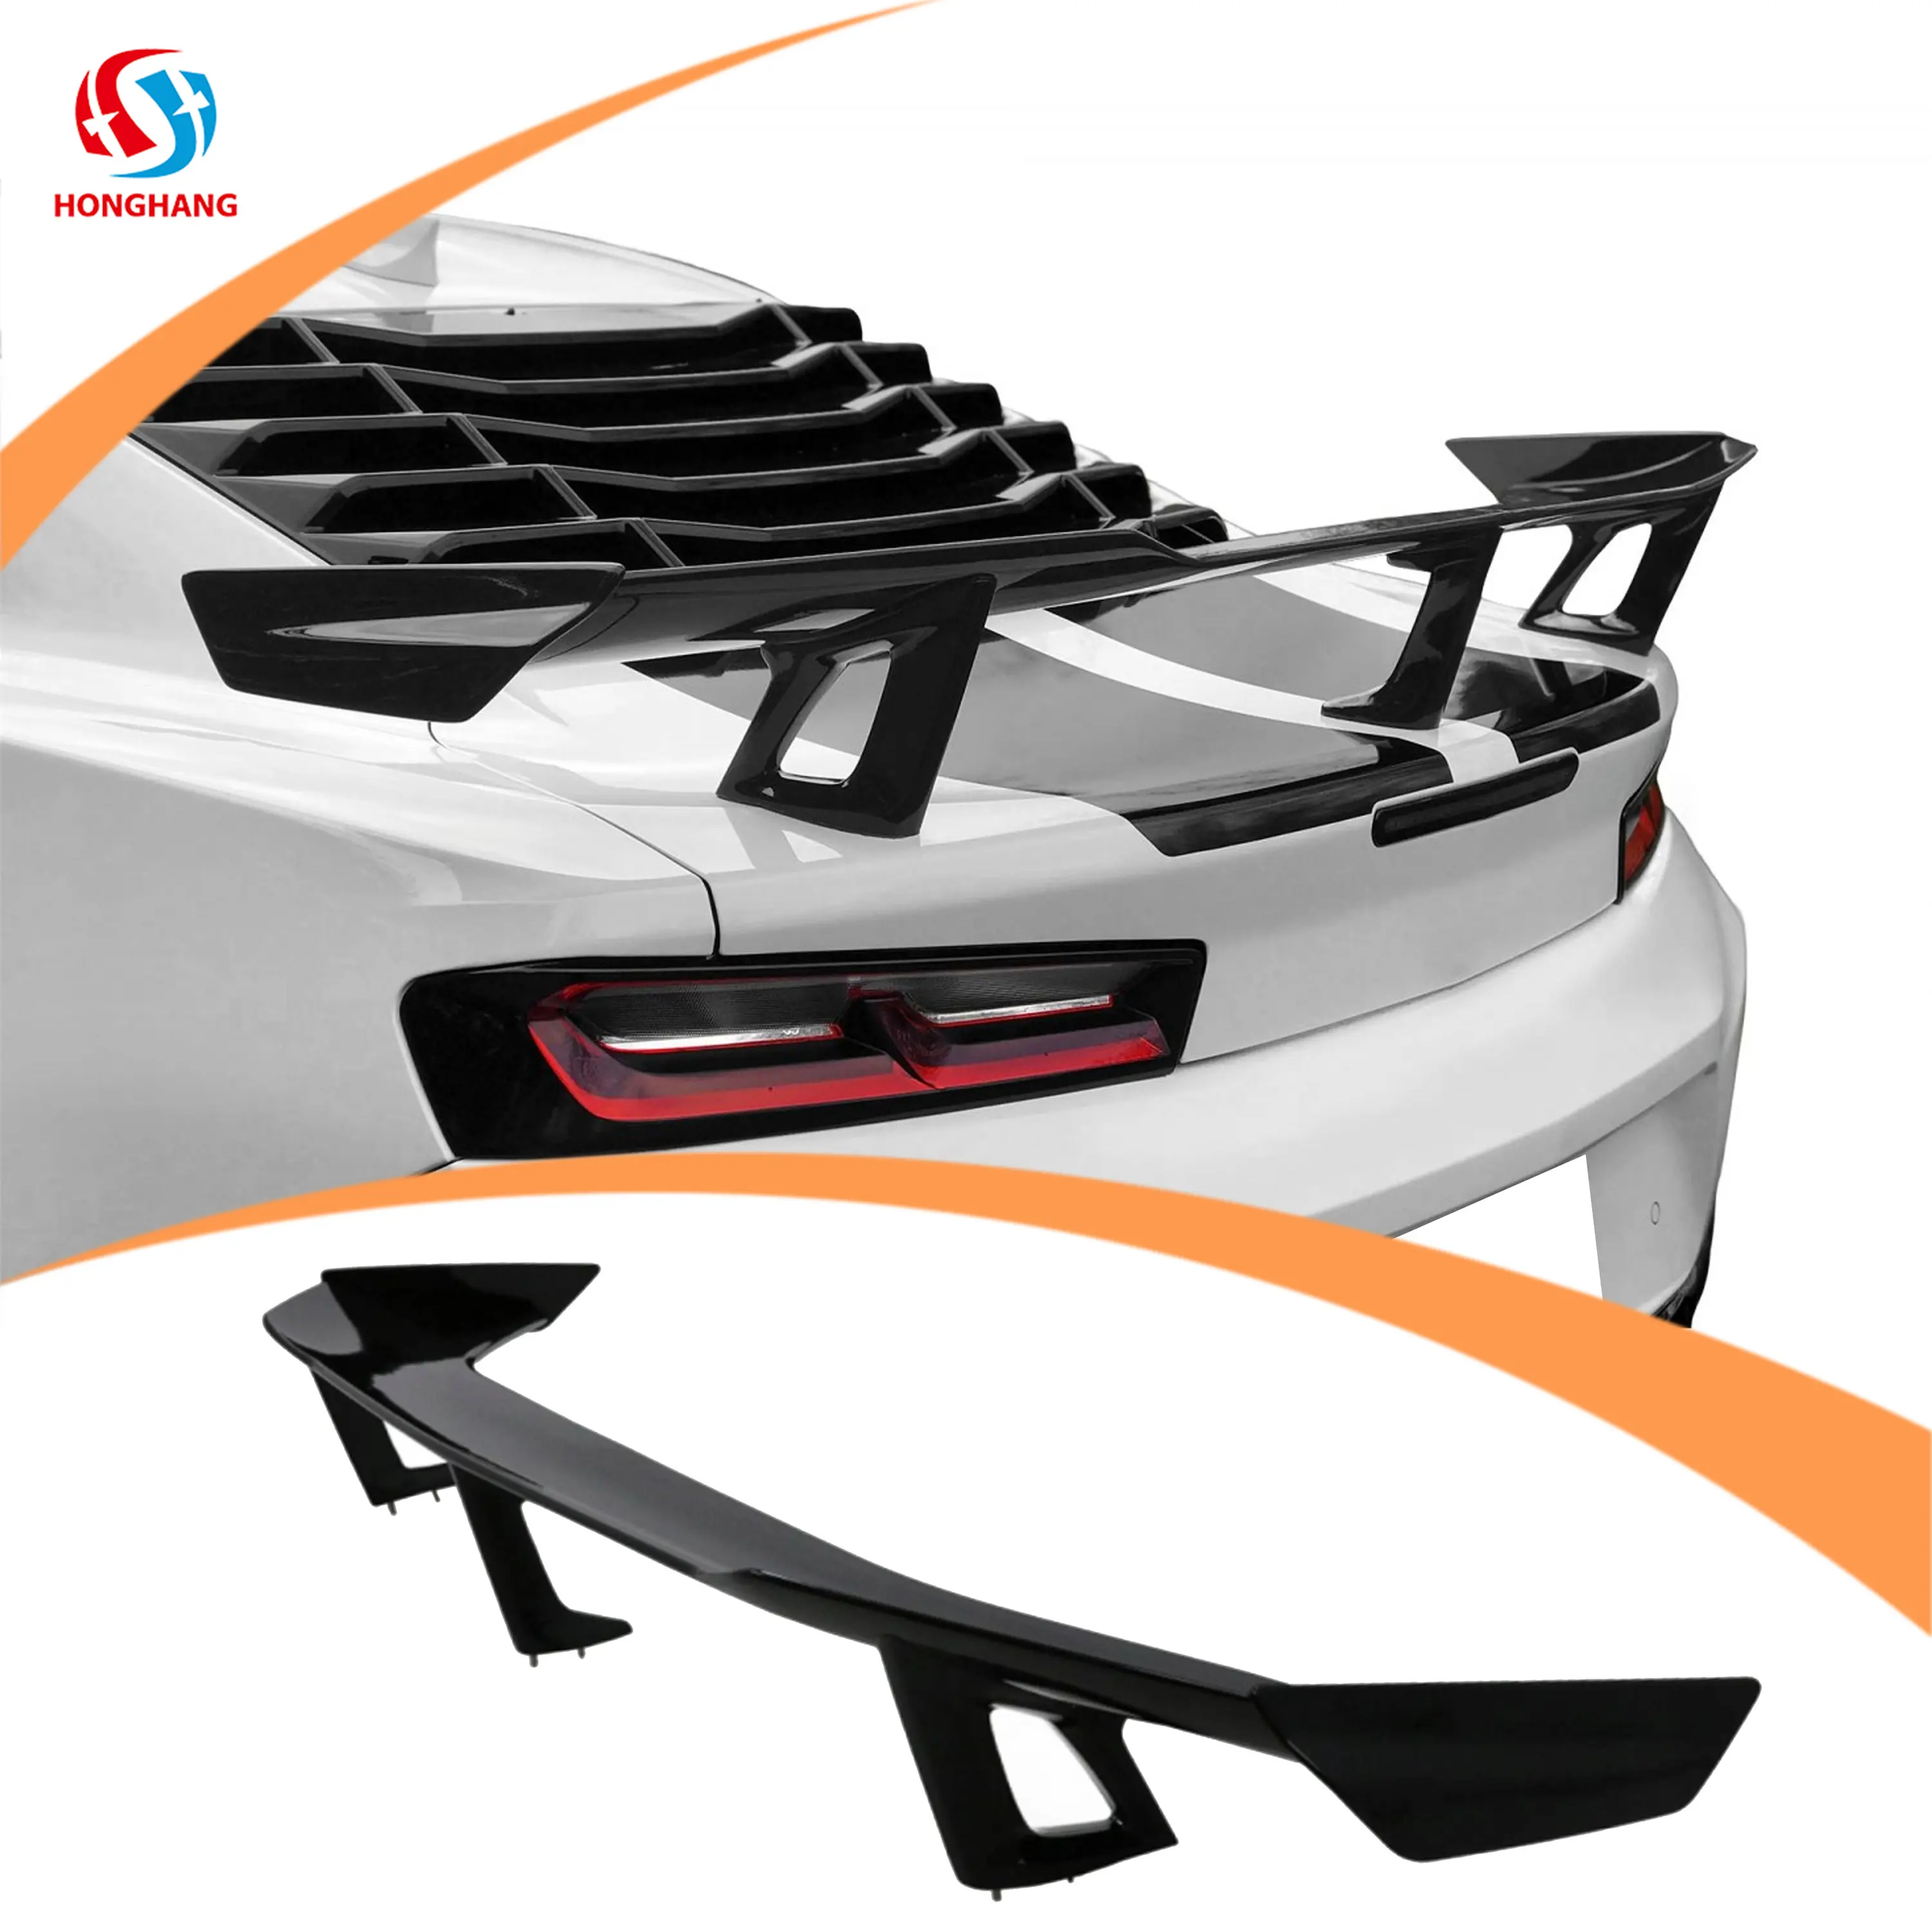 Honghang - Spoiler traseiro de fibra de carbono para Chevrolet Camaro 2015 2016 2018 2019 2020, peças de carro com gloss preto, estilo ZL1